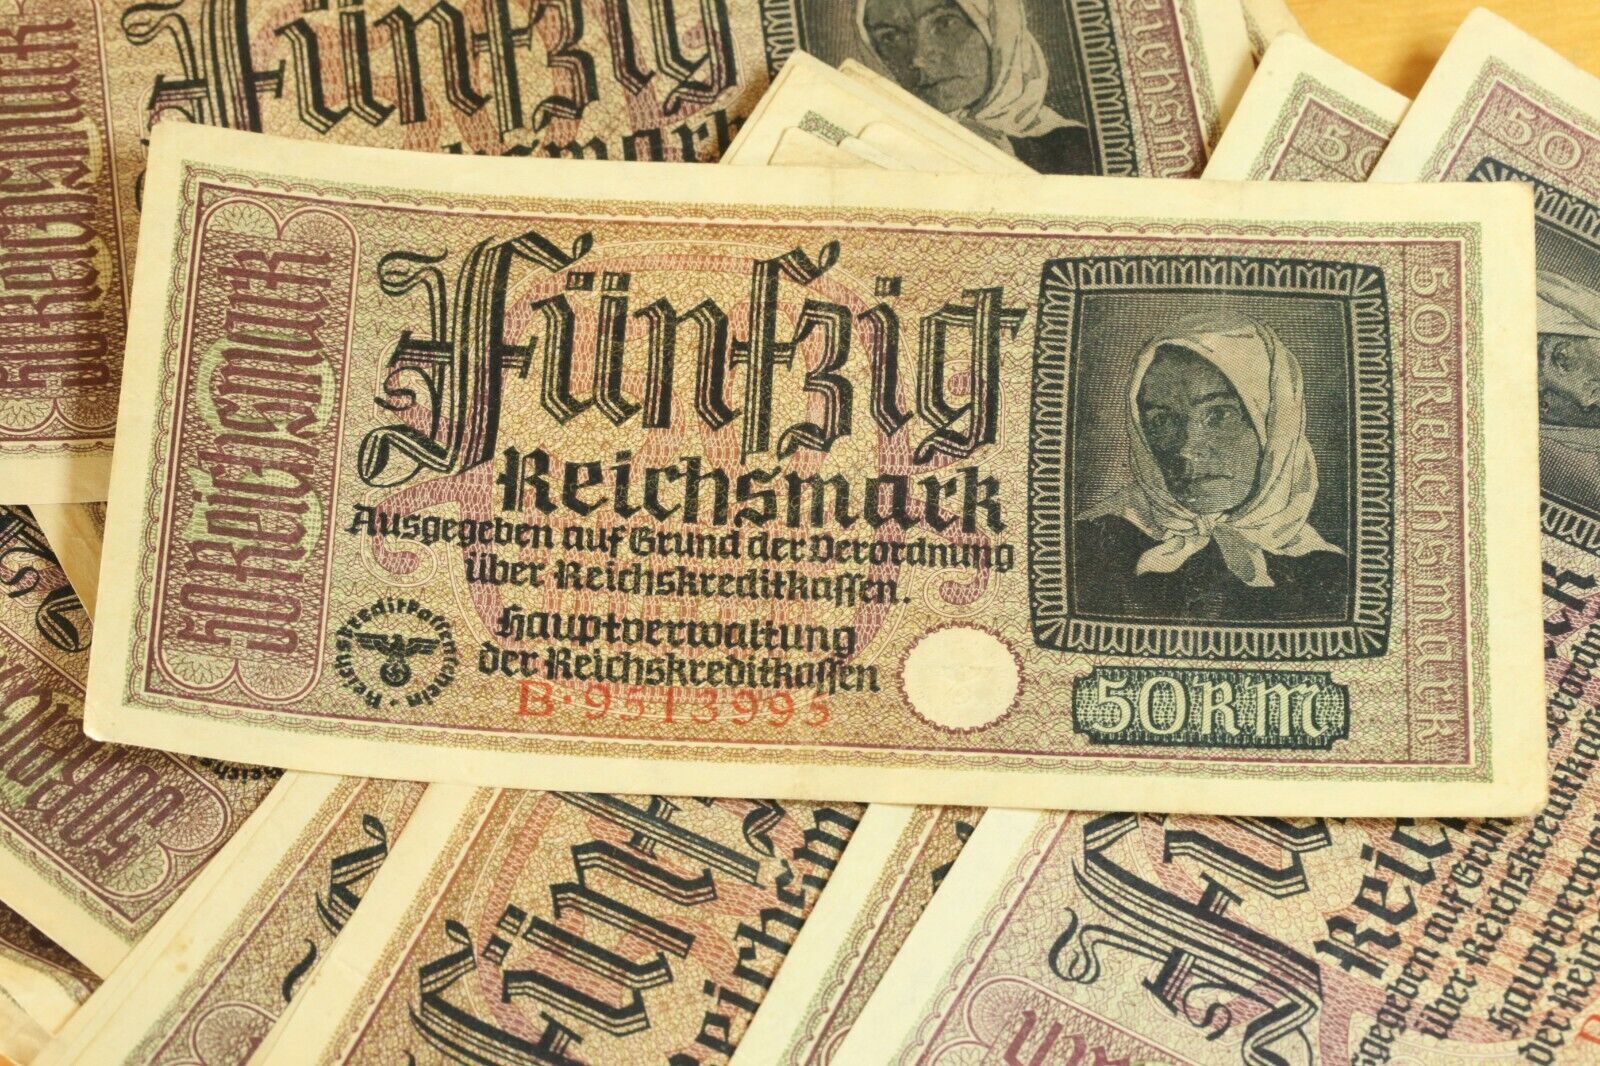 50 REICHSMARK NAZI GERMANY CURRENCY GERMAN BANKNOTE NOTE MONEY BILL SWASTIKA WW2